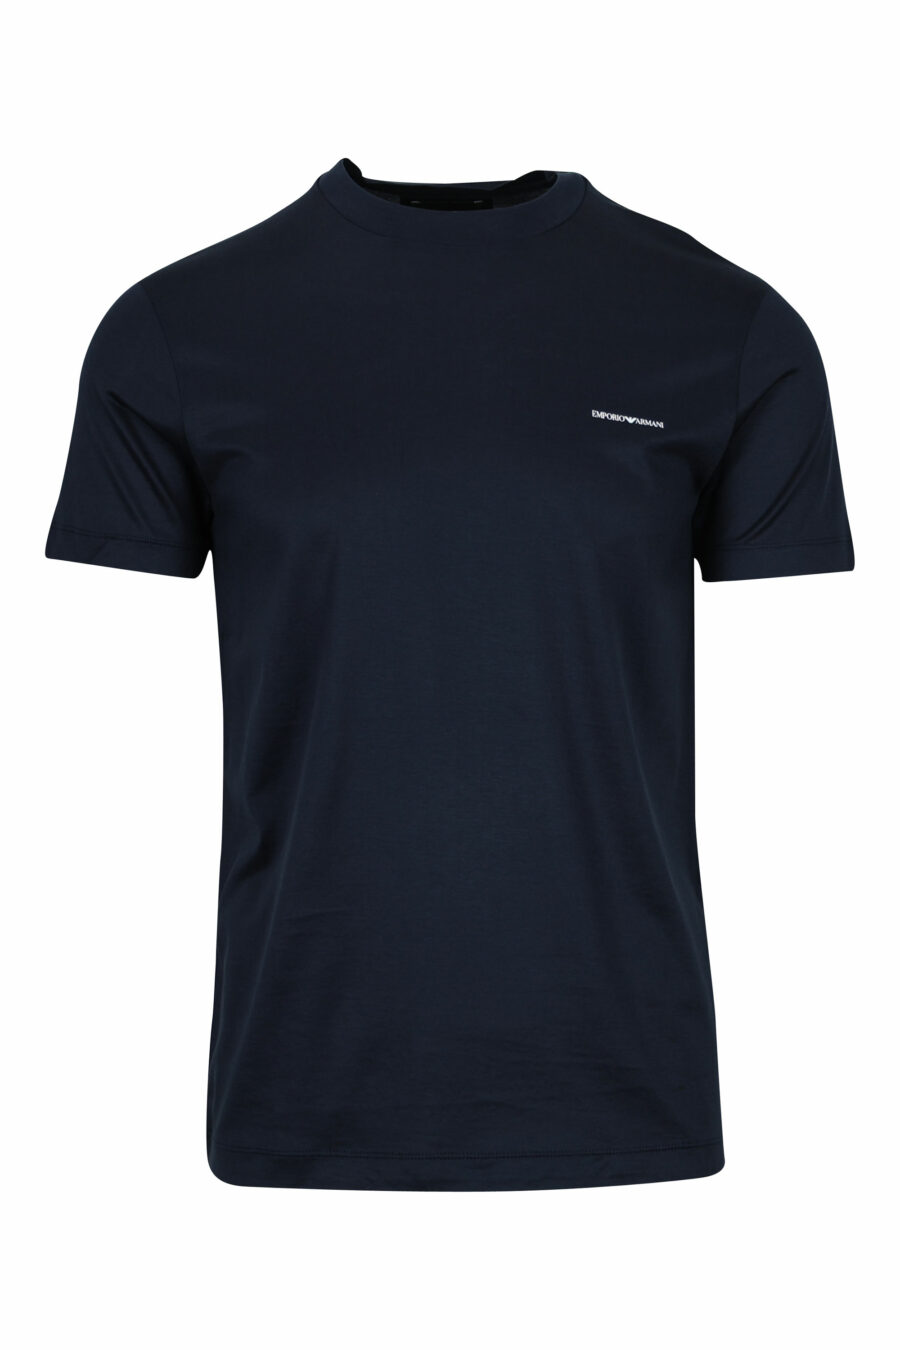 Camiseta azul oscuro con minilogo "emporio" - 8059516408352 1